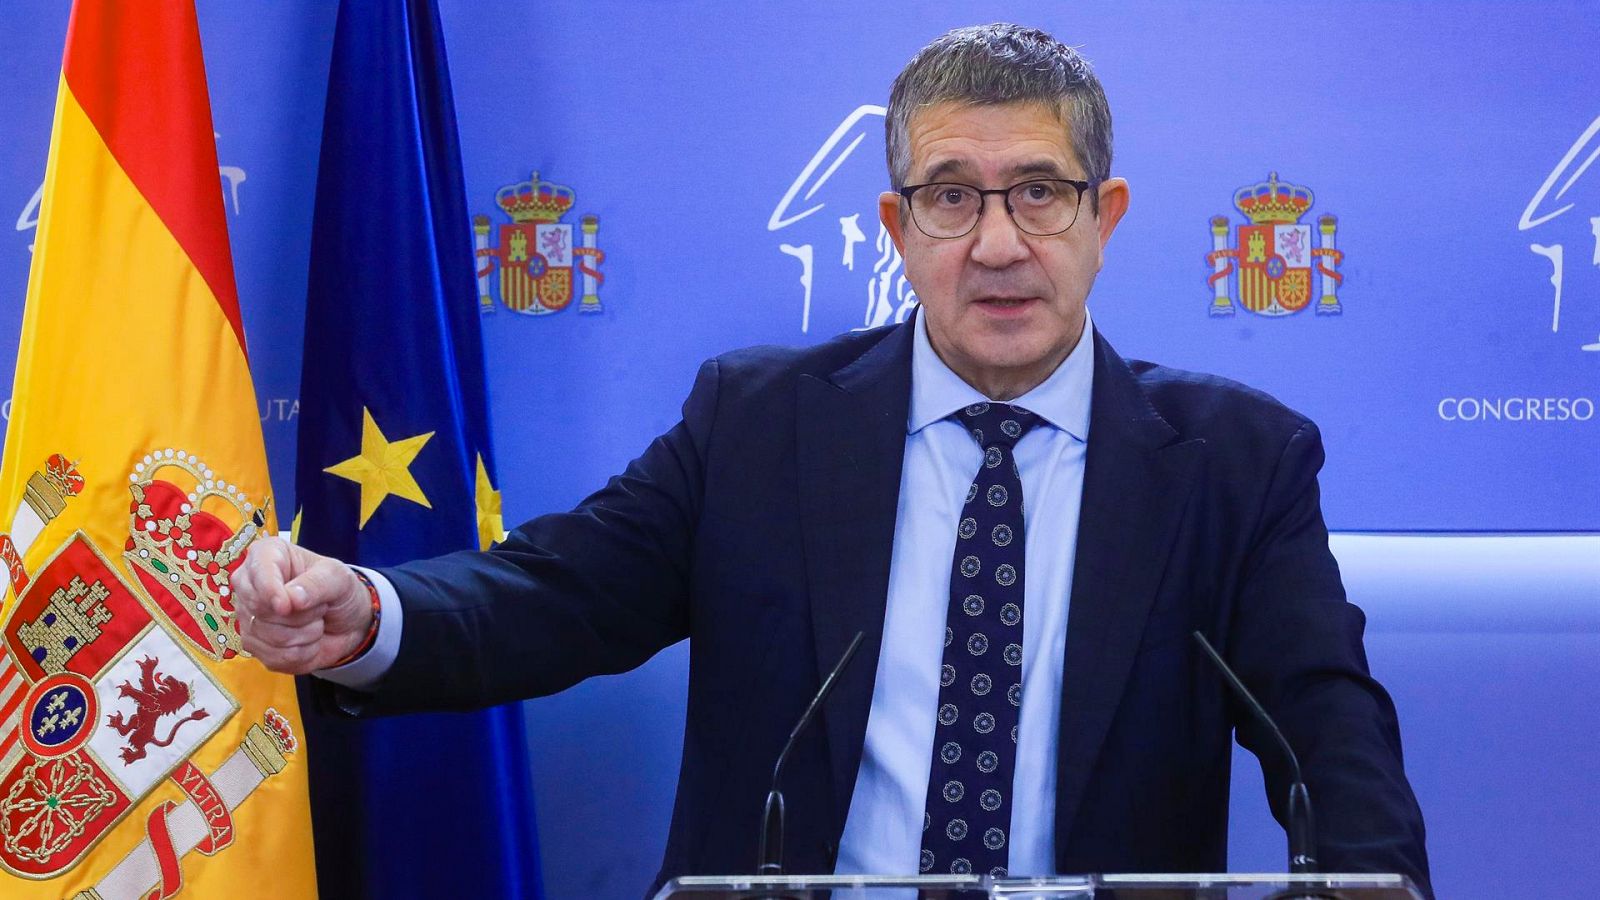 El PSOE prepara acciones legales contra los "ataques violentos" en Ferraz